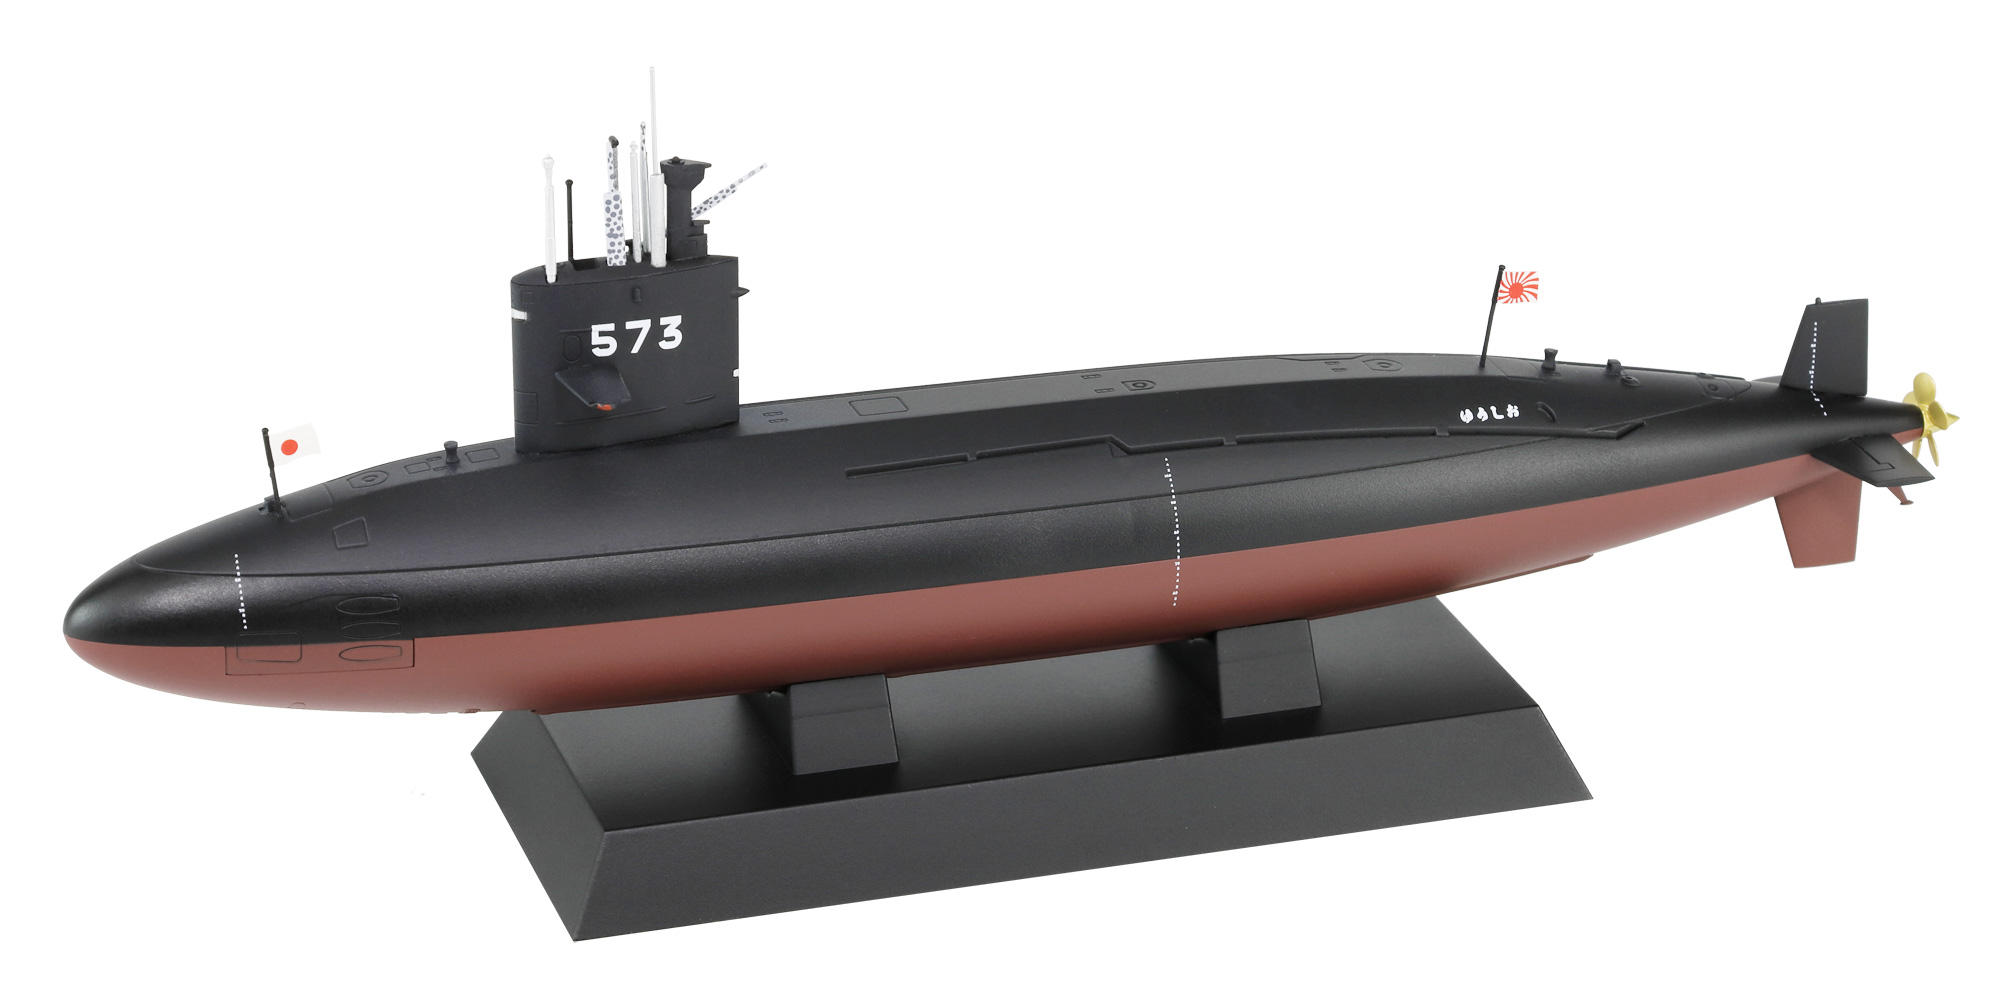 JBM08 1/350 海上自衛隊 潜水艦 SS-573 ゆうしお